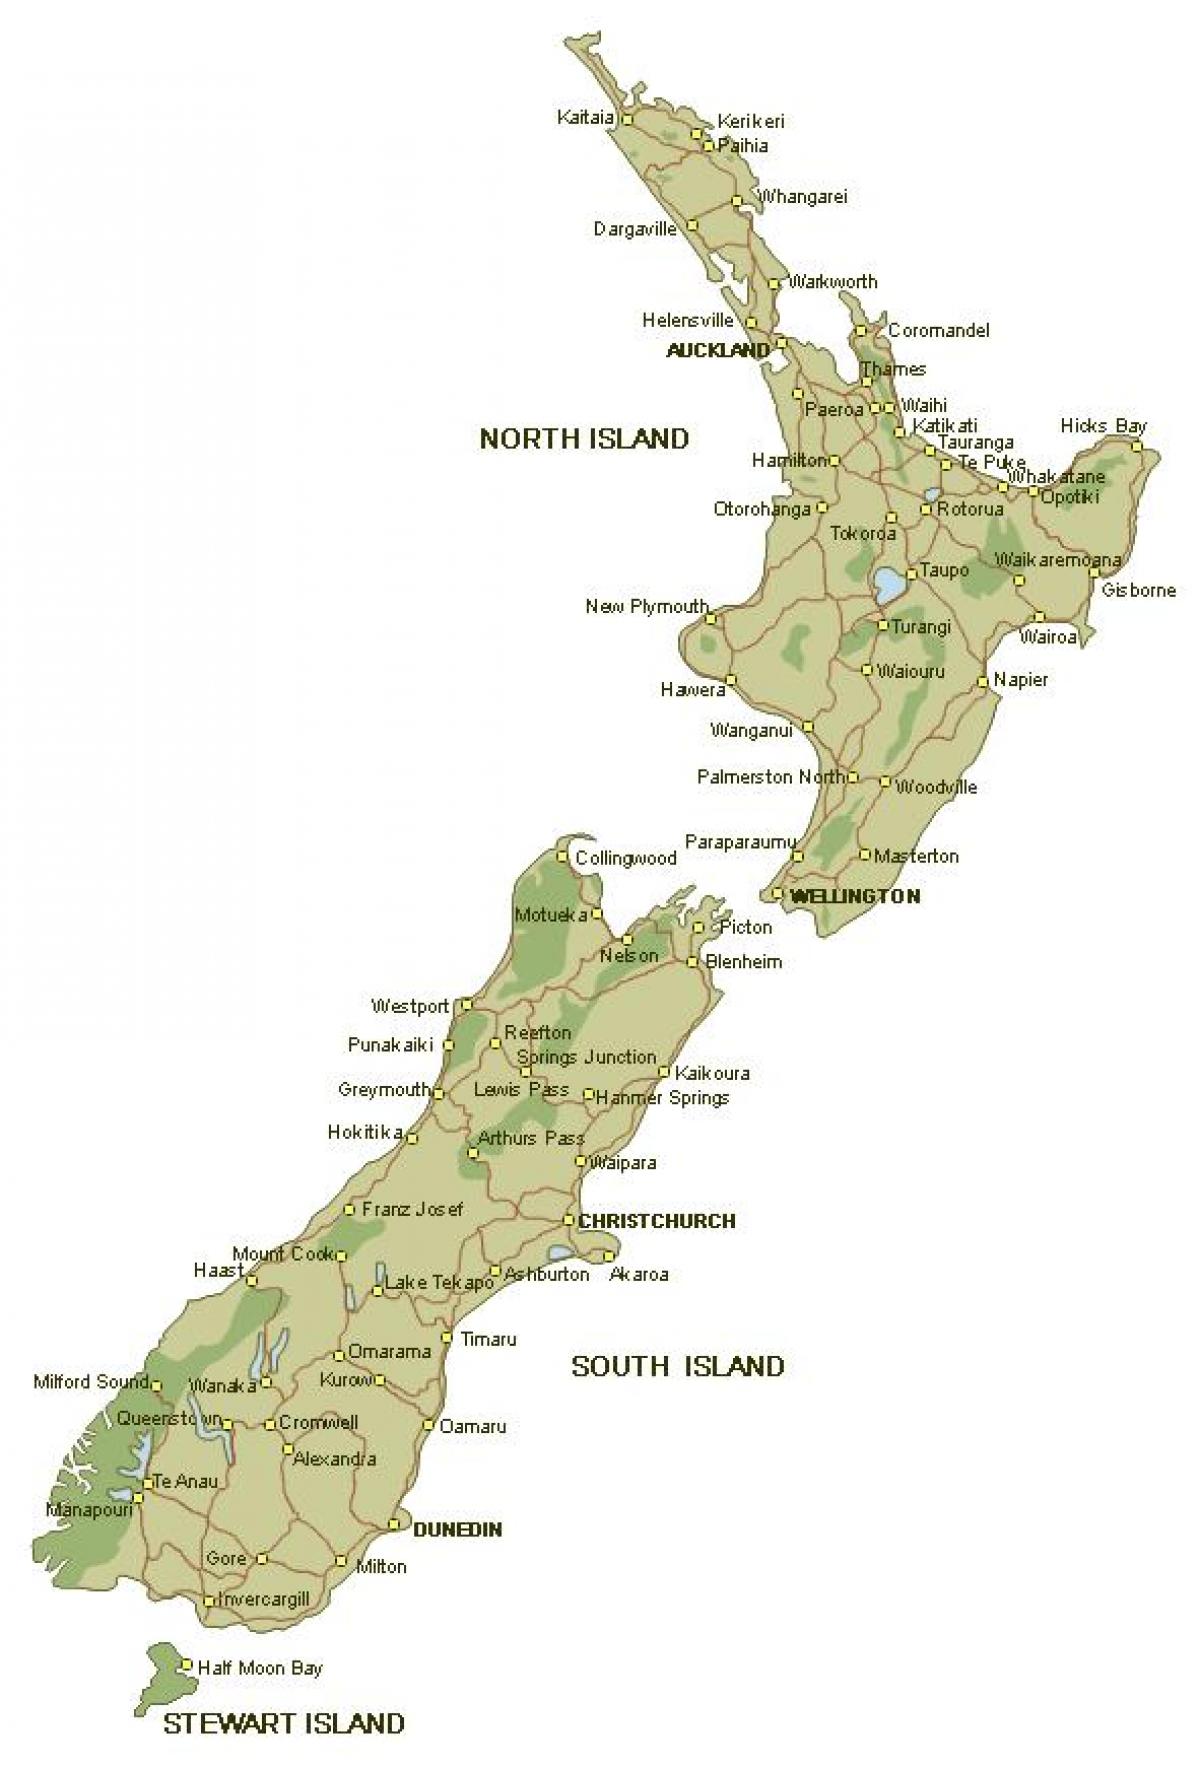 Ayrıntılı Yeni Zelanda haritası 